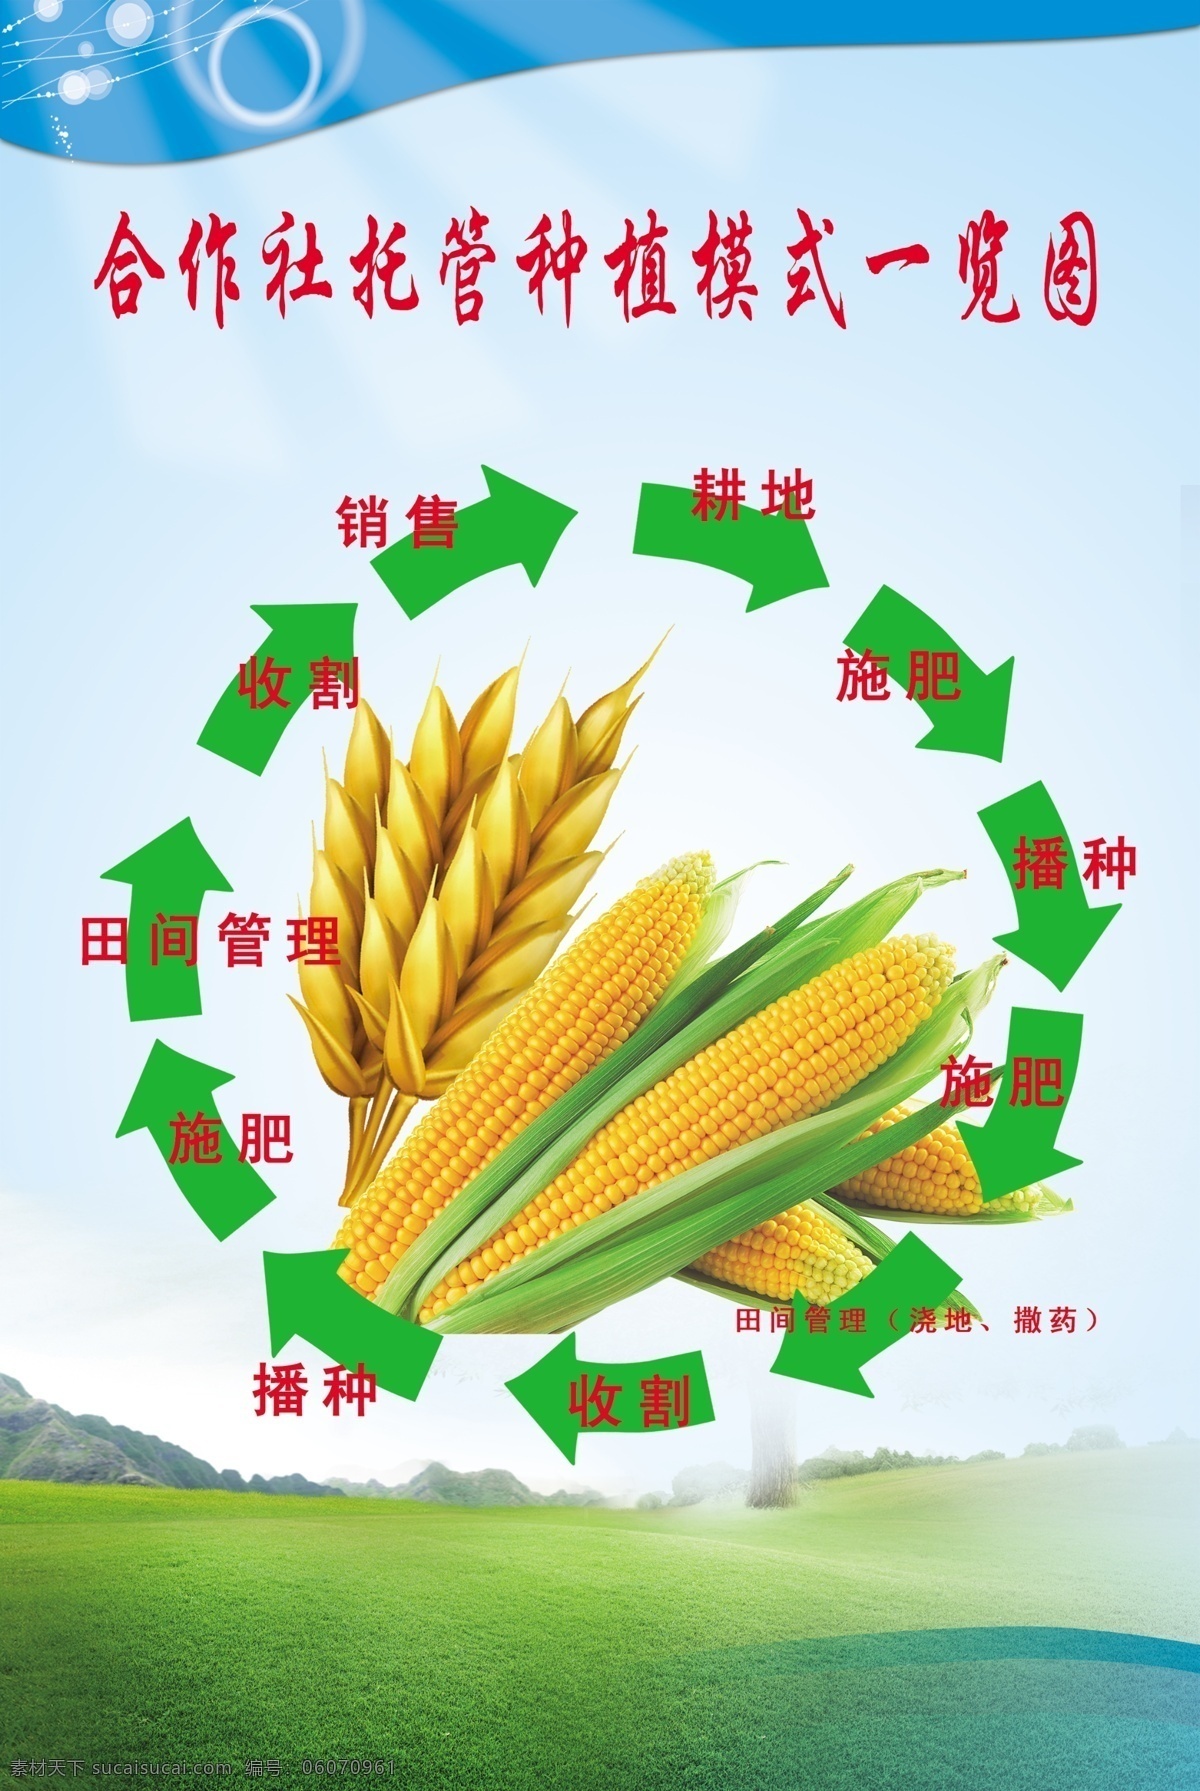 托管 合作社 一览图 合作社托管图 循环图 农业合作社 农业 玉米 农业管理 分层